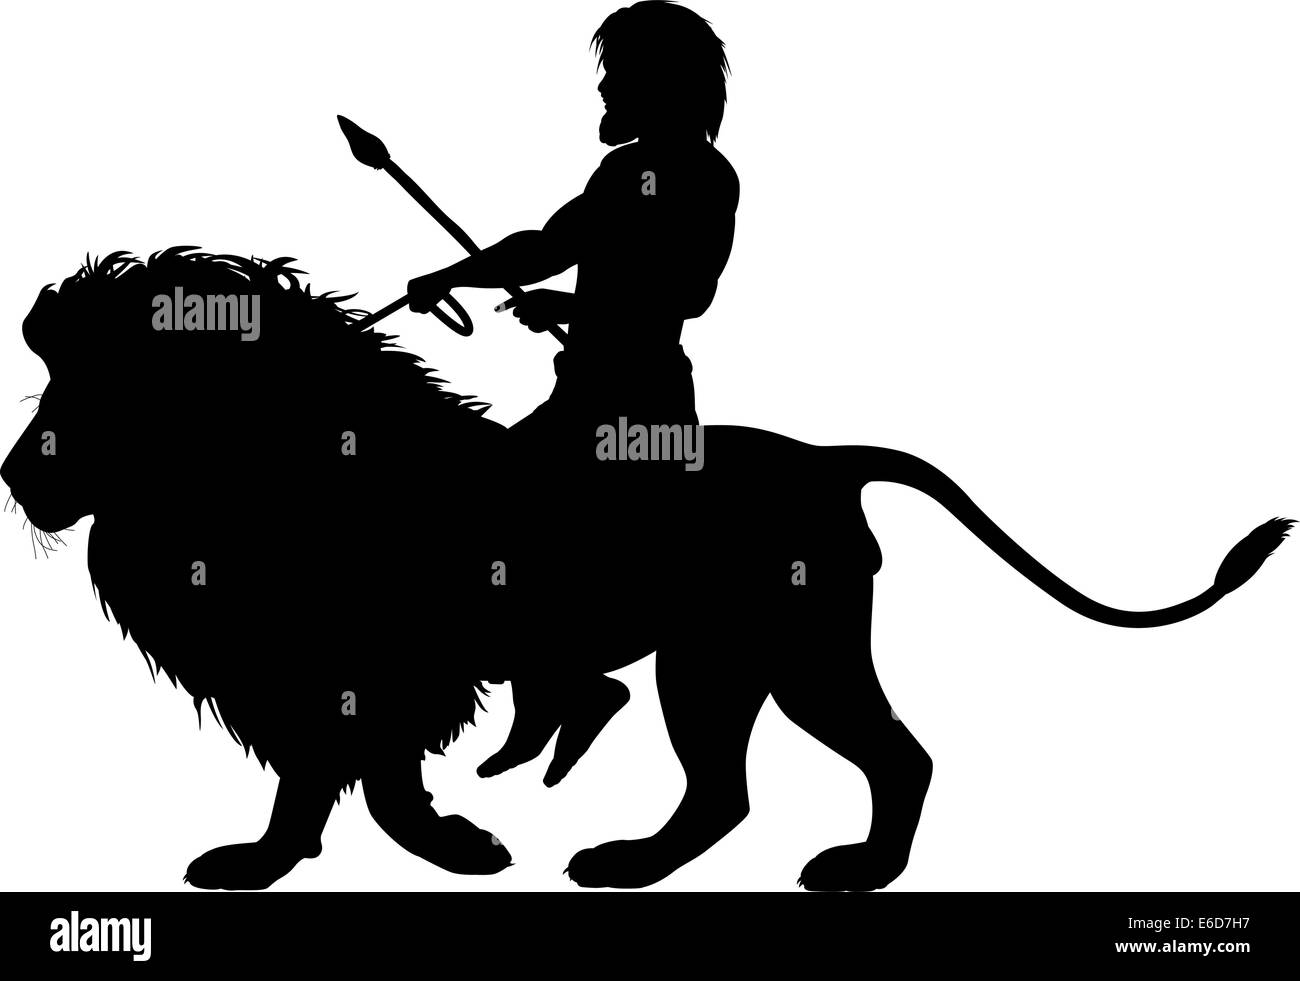 Bearbeitbares Vektor Silhouette eines Mannes Reiten auf einem männlichen Löwen mit Figuren als separate Objekte Stock Vektor